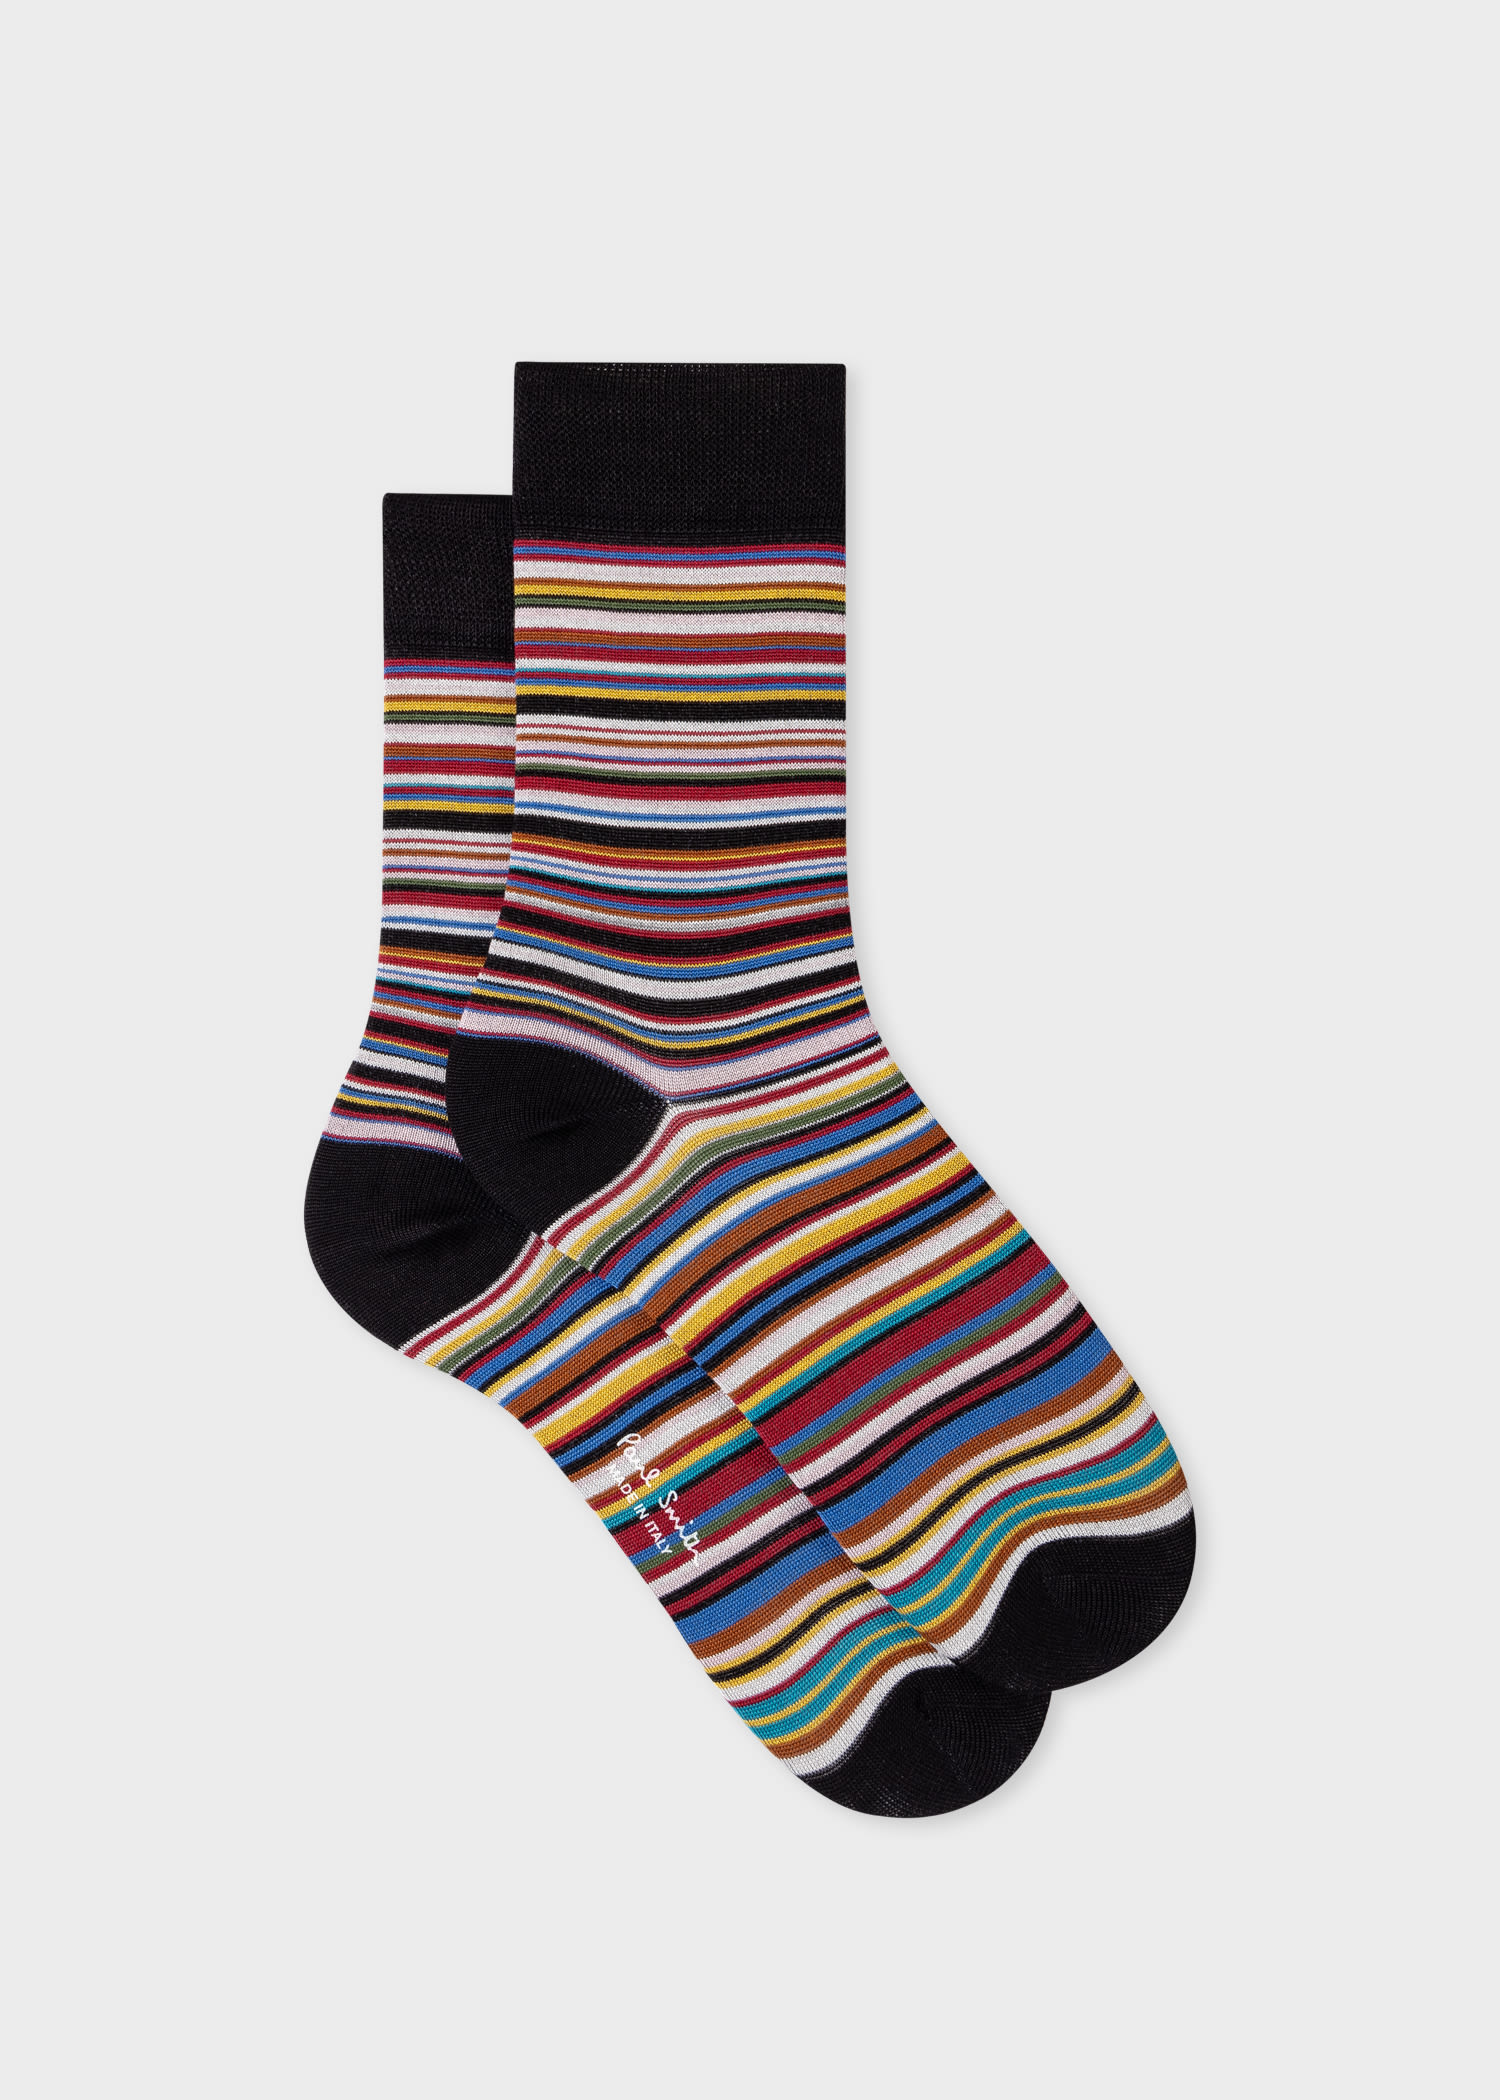 Paul Smith Women's 'signature Stripe' Silk-mix Socks Multicolour In Black